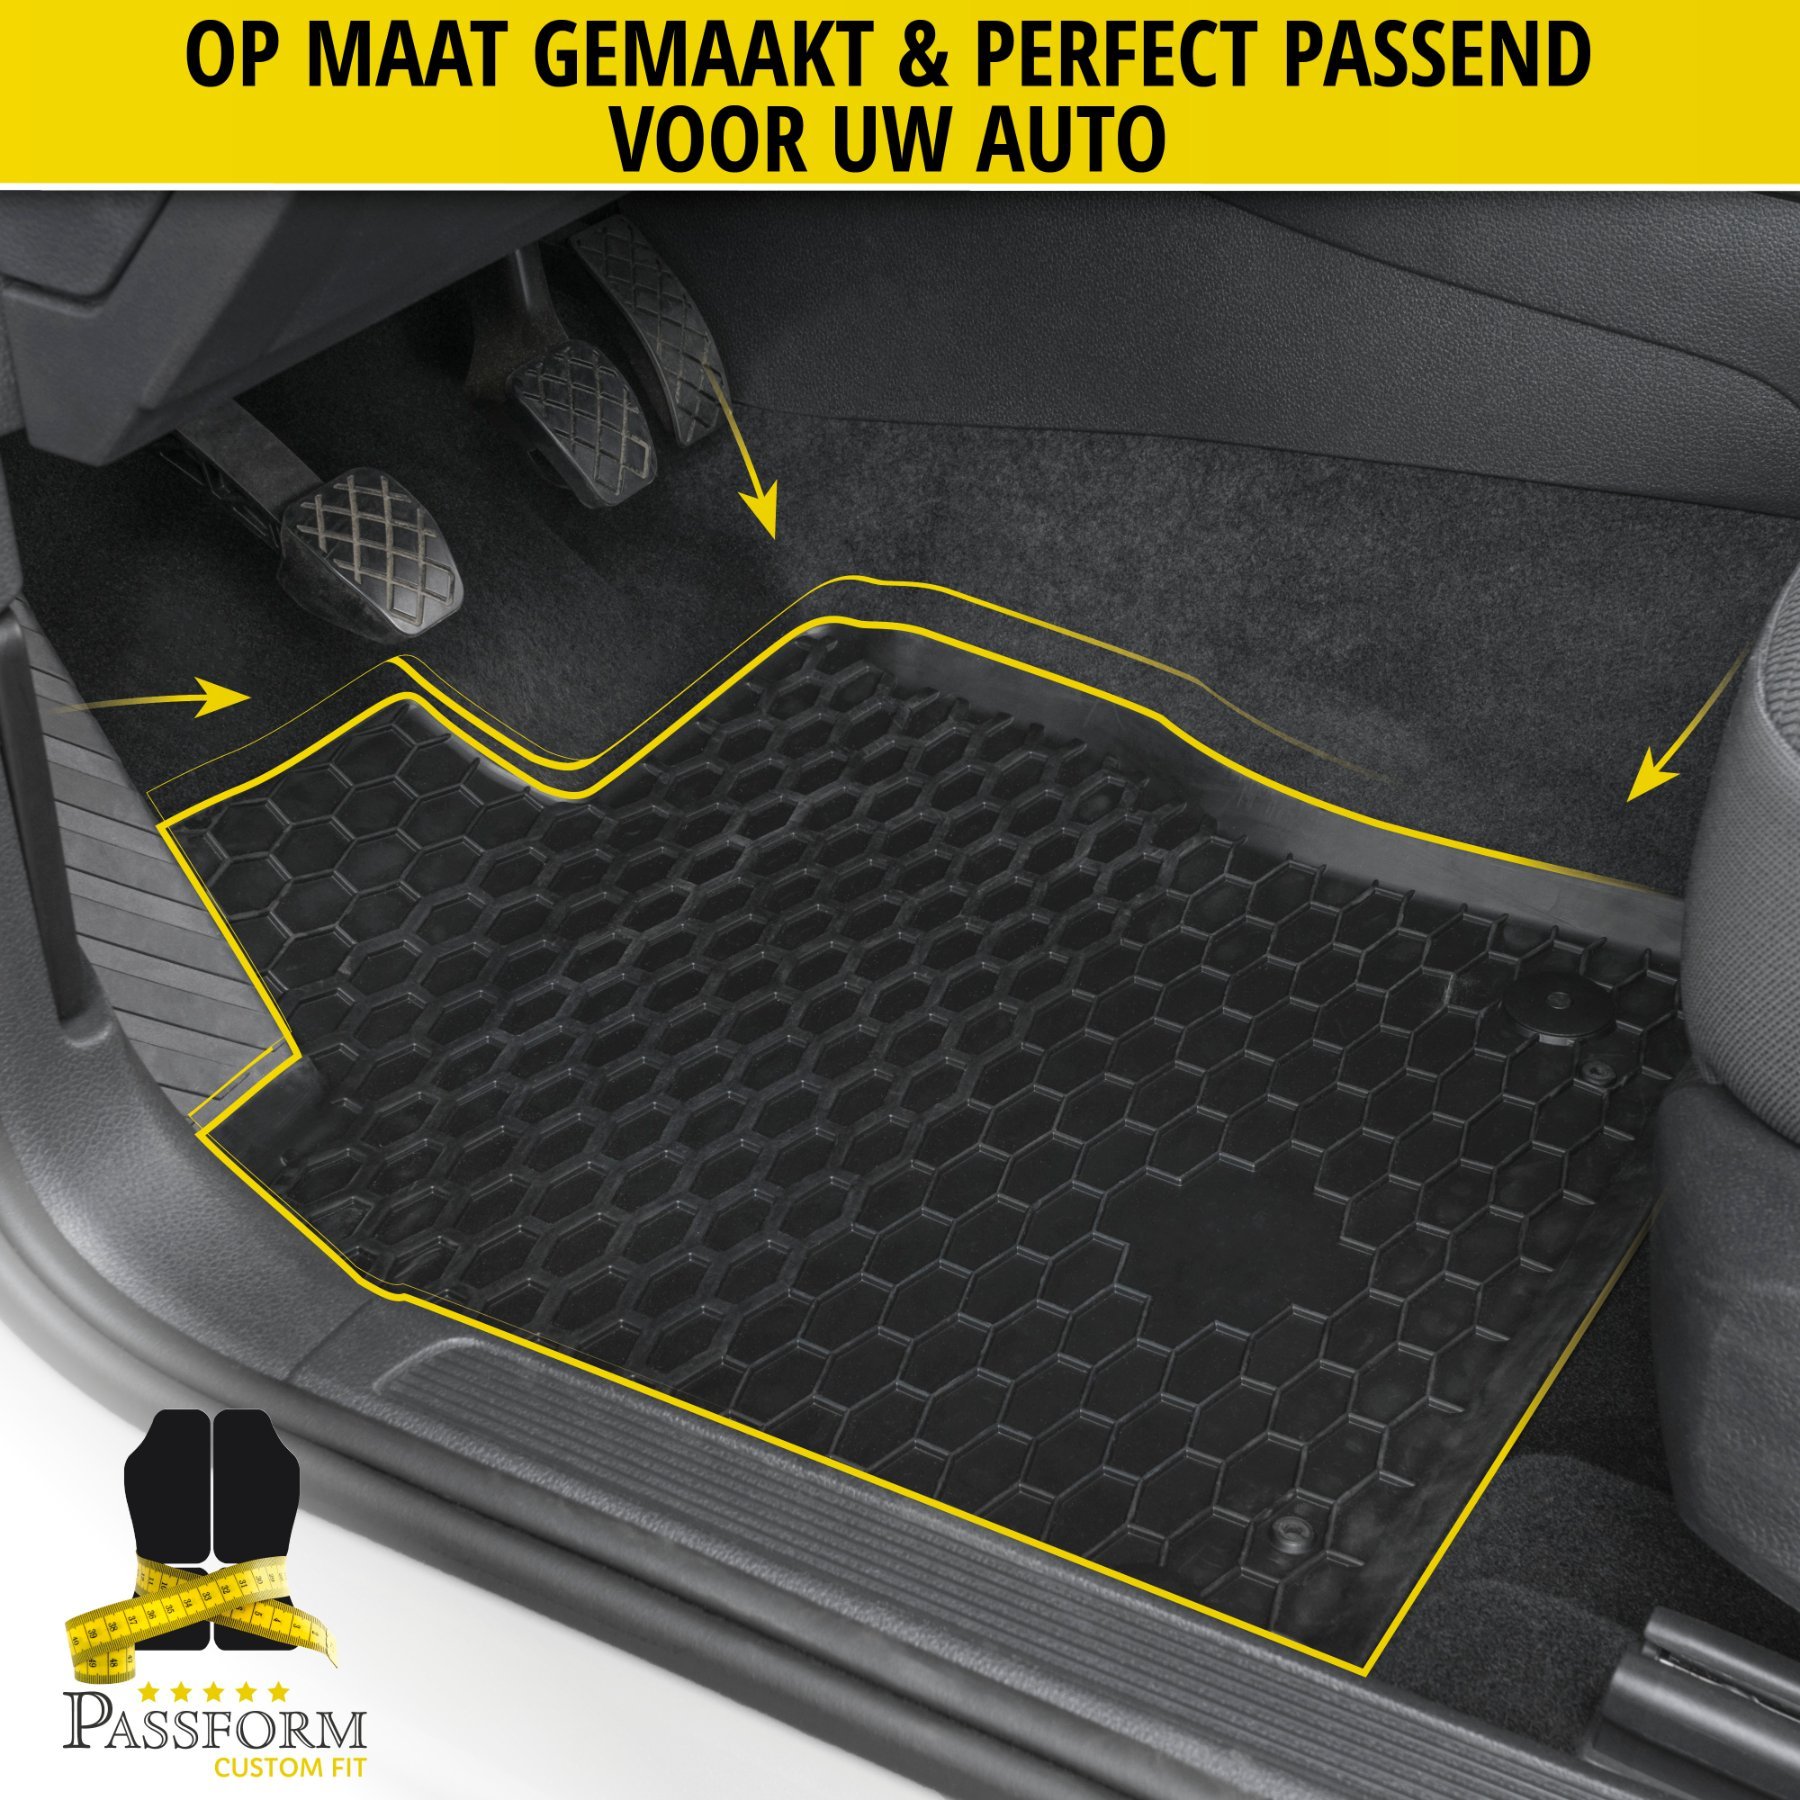 DirtGuard rubberen voetmatten geschikt voor Renault Kangoo 2008-2021, Mercedes-Benz Citan 11/2012-2021